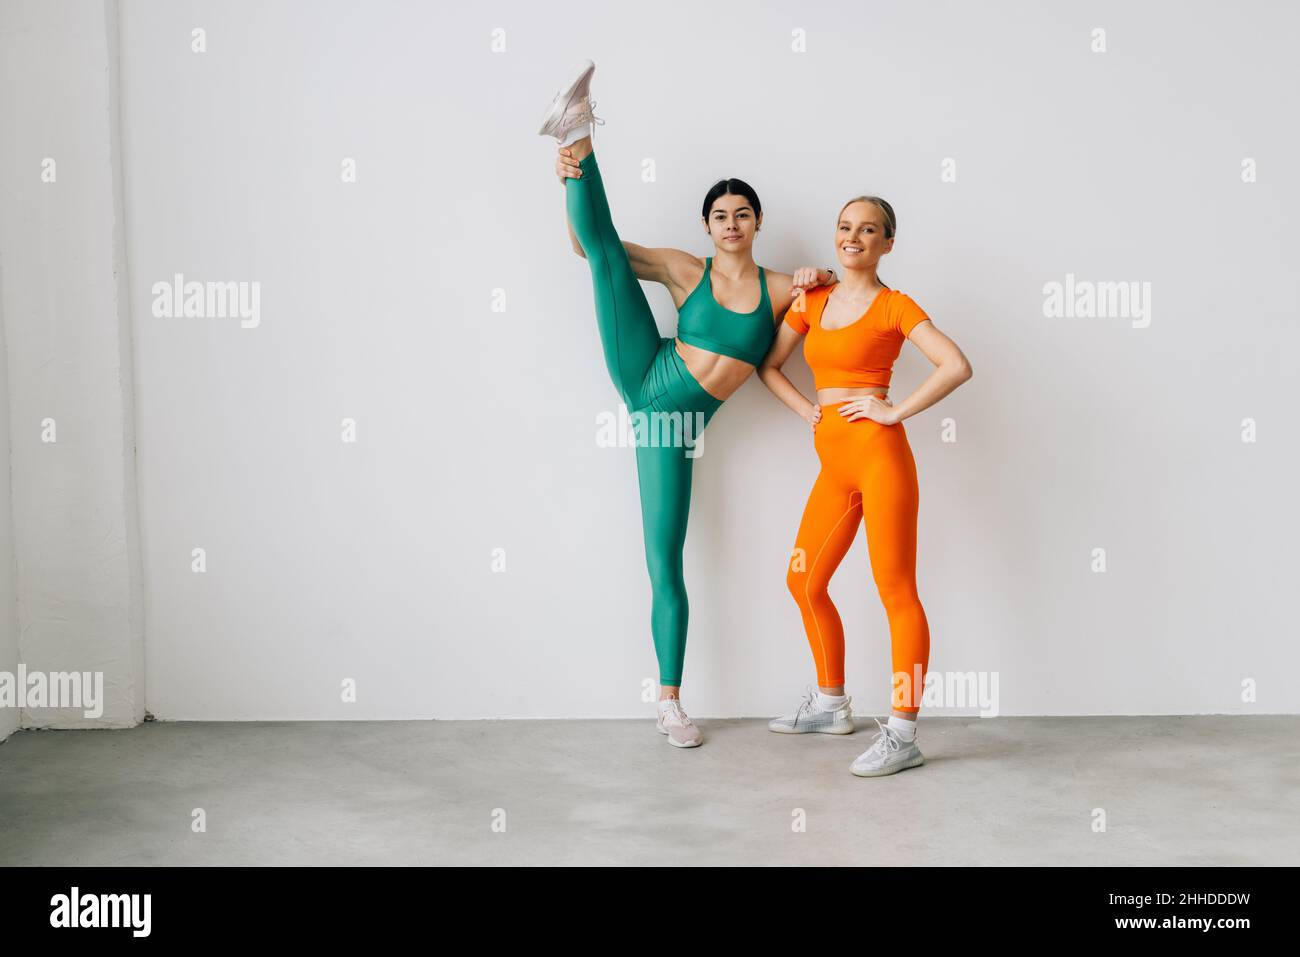 Zwei sportliche Frauen, die mit einem Stretchband auf dem Boden liegen, beim seitlichen Beinheben trainieren Stockfoto